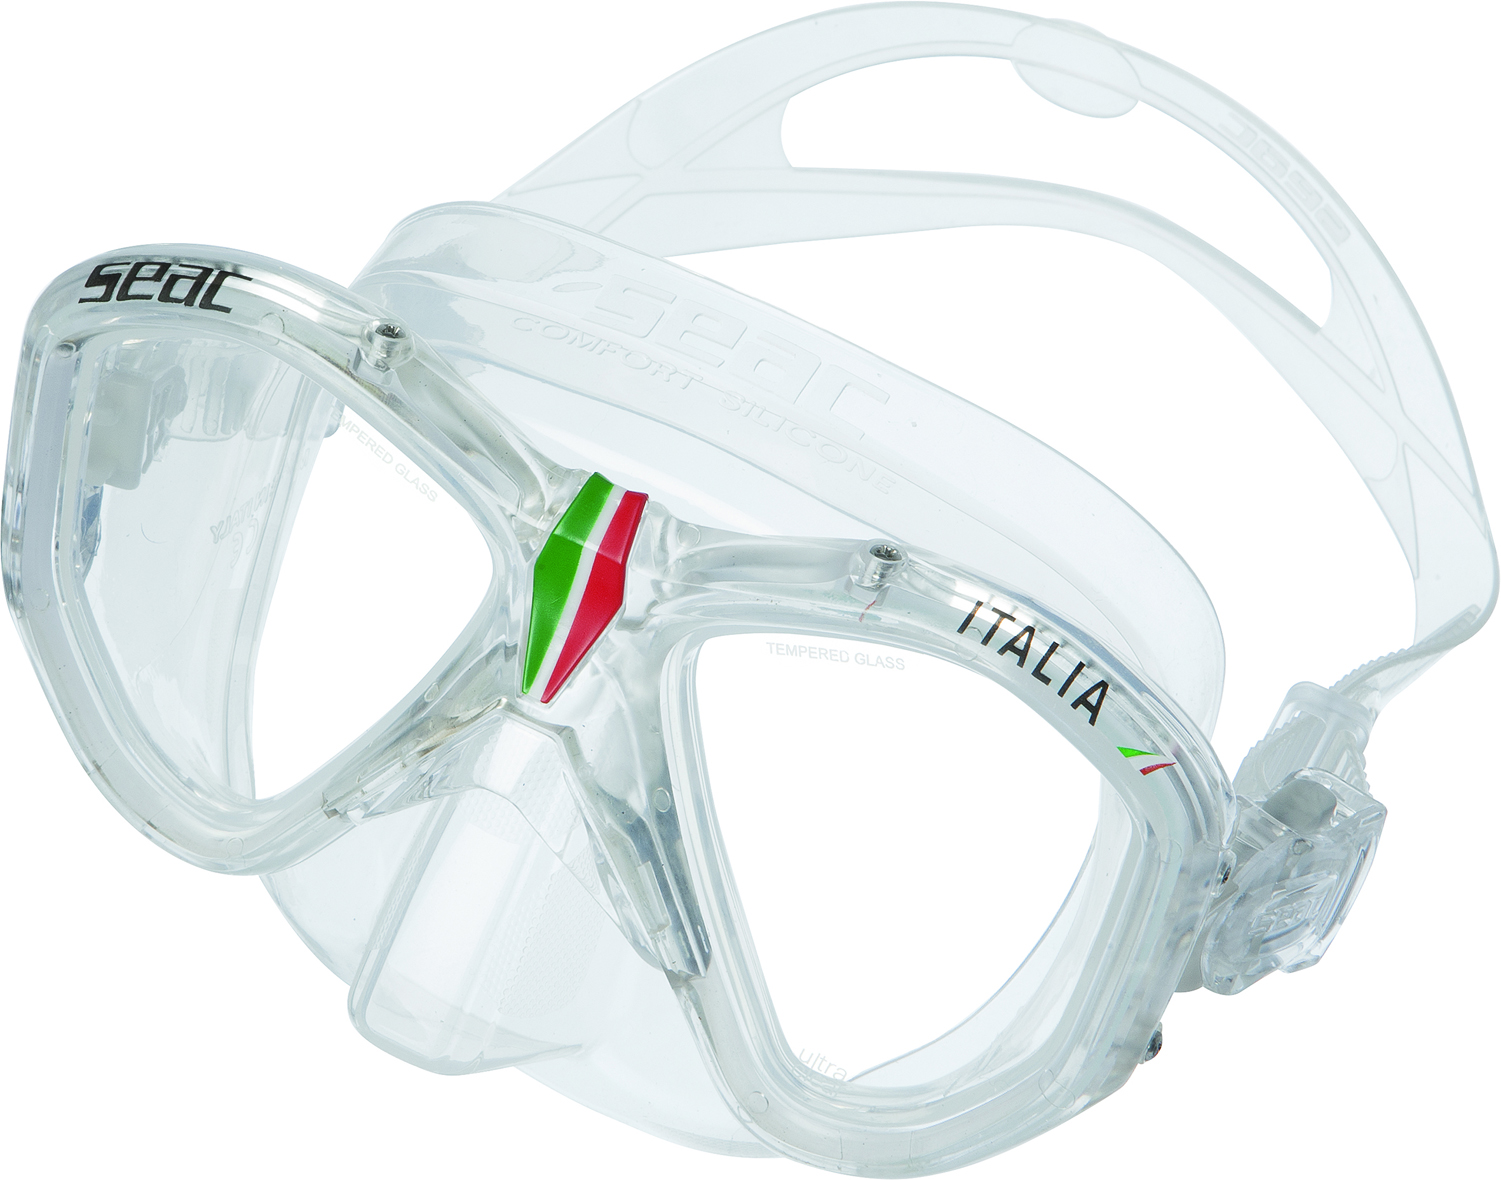 Seac Italia Dive Mask